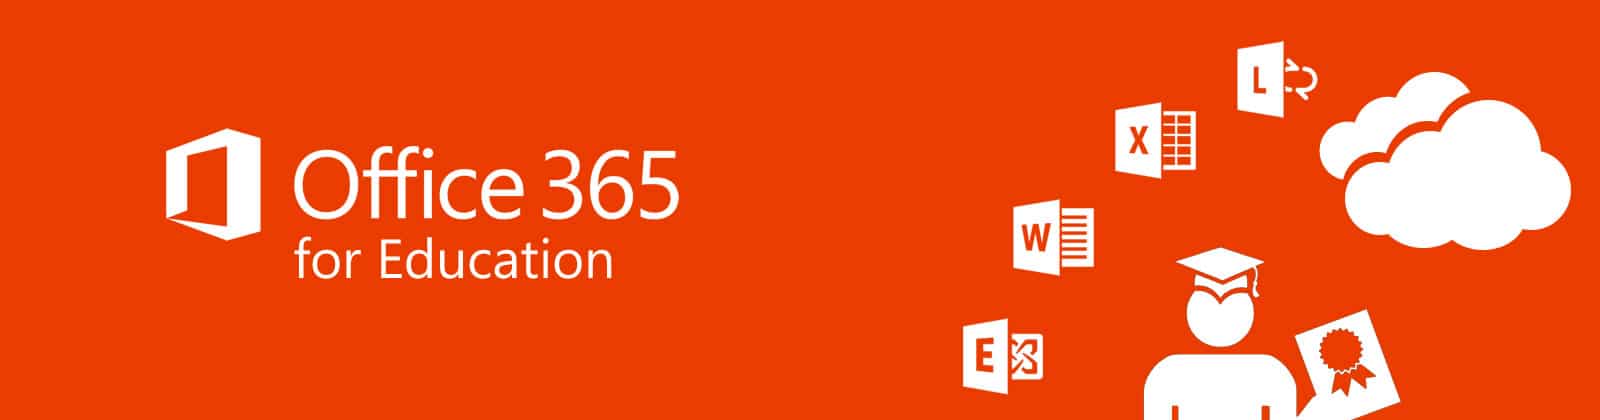 Microsoft 365 Education pour les écoles et universités pour collaboration professeurs et étudiants